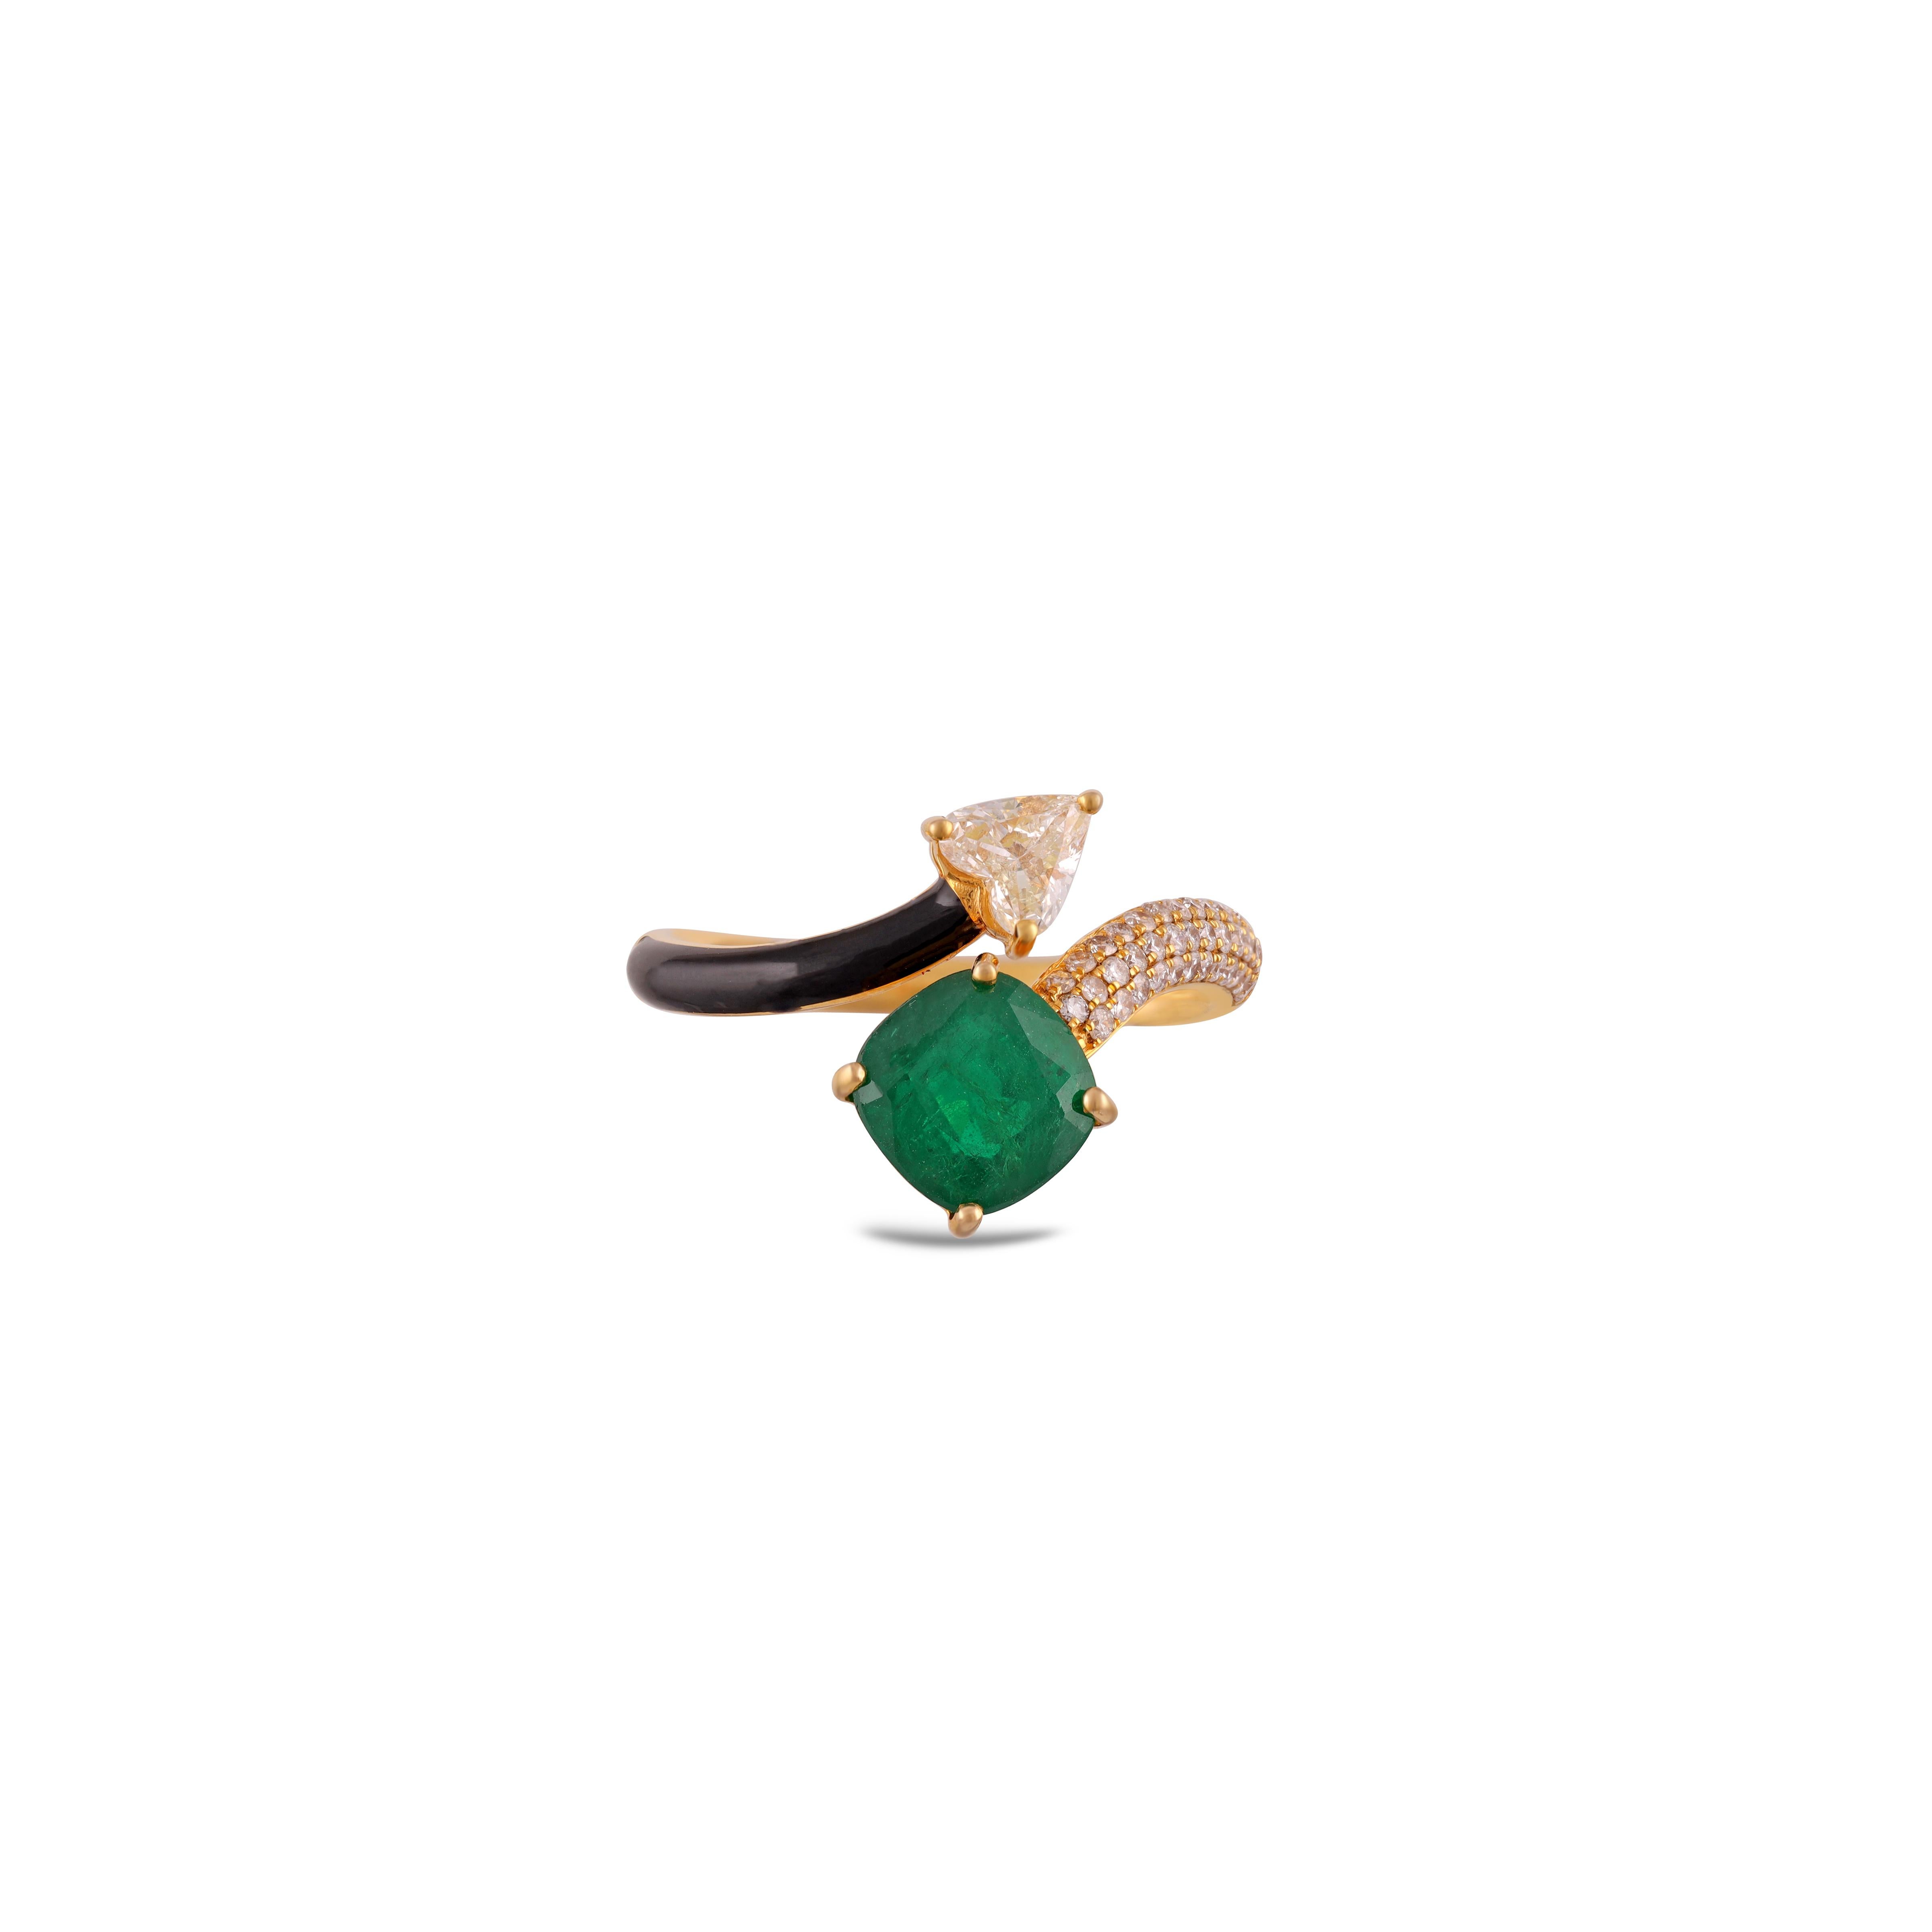 1,45 Karat klar sambischen Smaragd & Diamant-Ring mit Emaille & 18K Gold mit 1 Stück von  Smaragd aus Sambia, Gewicht 1,45 Karat, umgeben von Diamanten, Gewicht 0,48 Karat, der gesamte Ring ist in 18 Karat eingefasst.  Gold.


 Die Ringgröße kann je